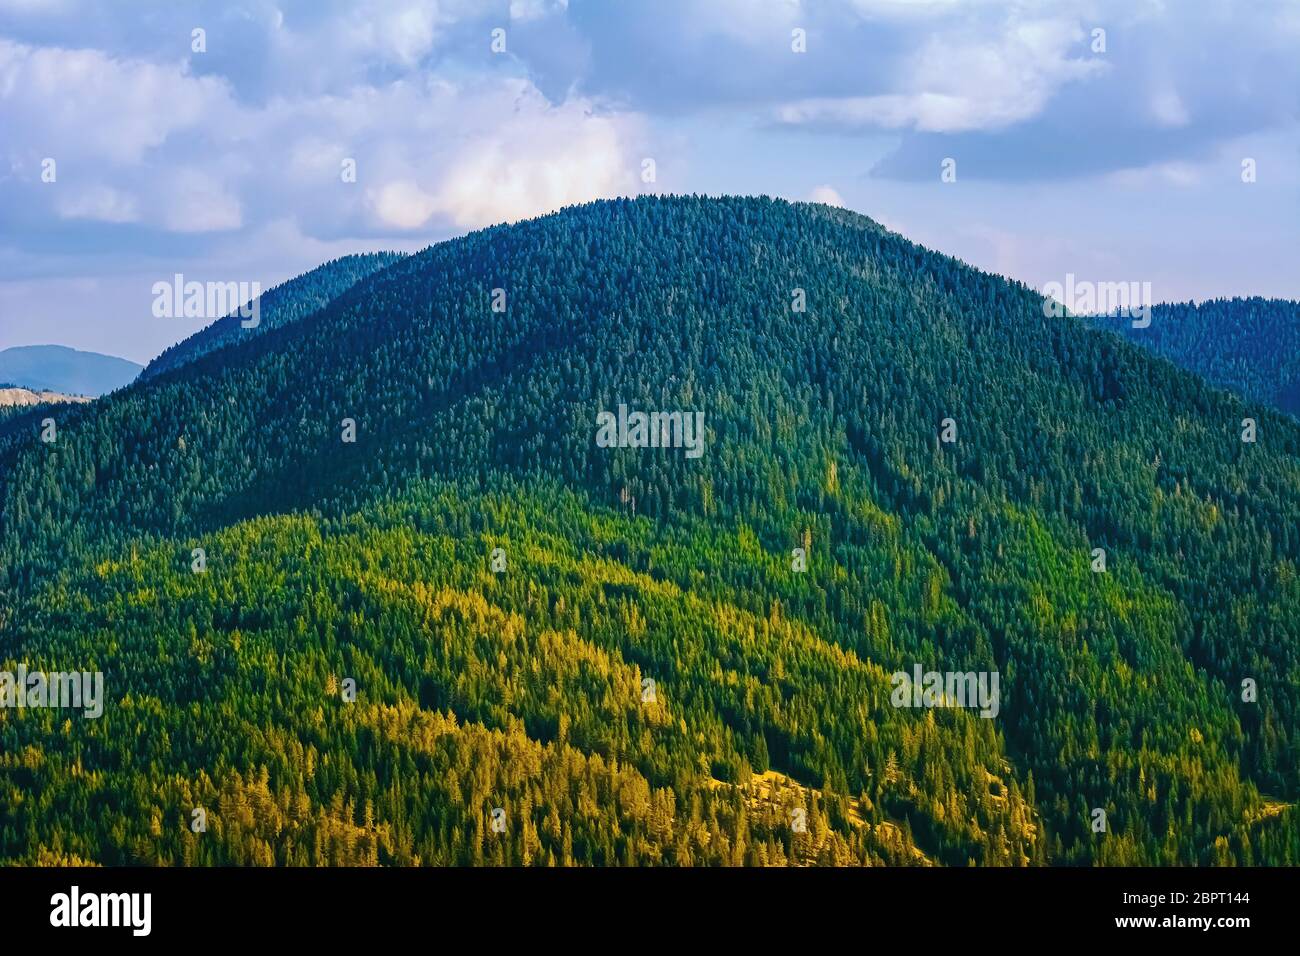 Rhodopes Mountain Range in Southeastern Europe, Bulgaria Stock Photo